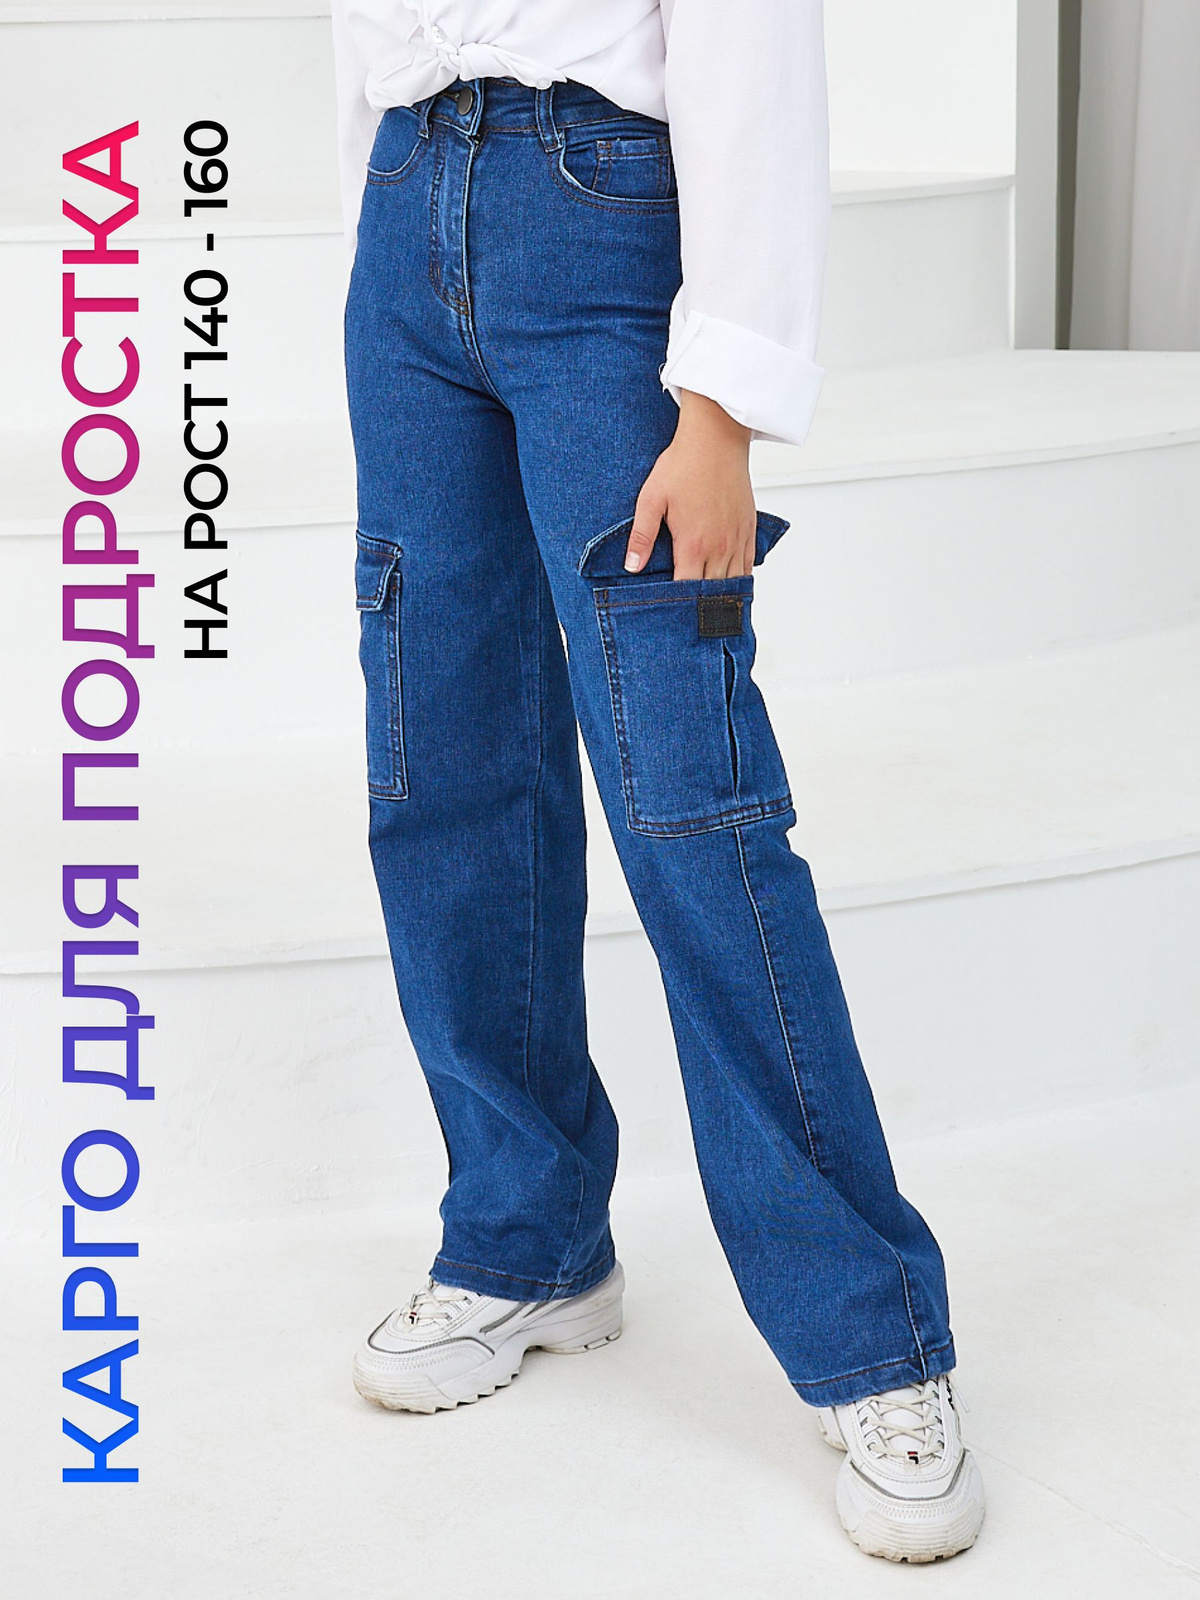 Код товара: 1296092391 Подростковые джинсы карго. Для самых молодых модниц. Представлены в 3 цветах: синий, черный и черный с белой строчкой.